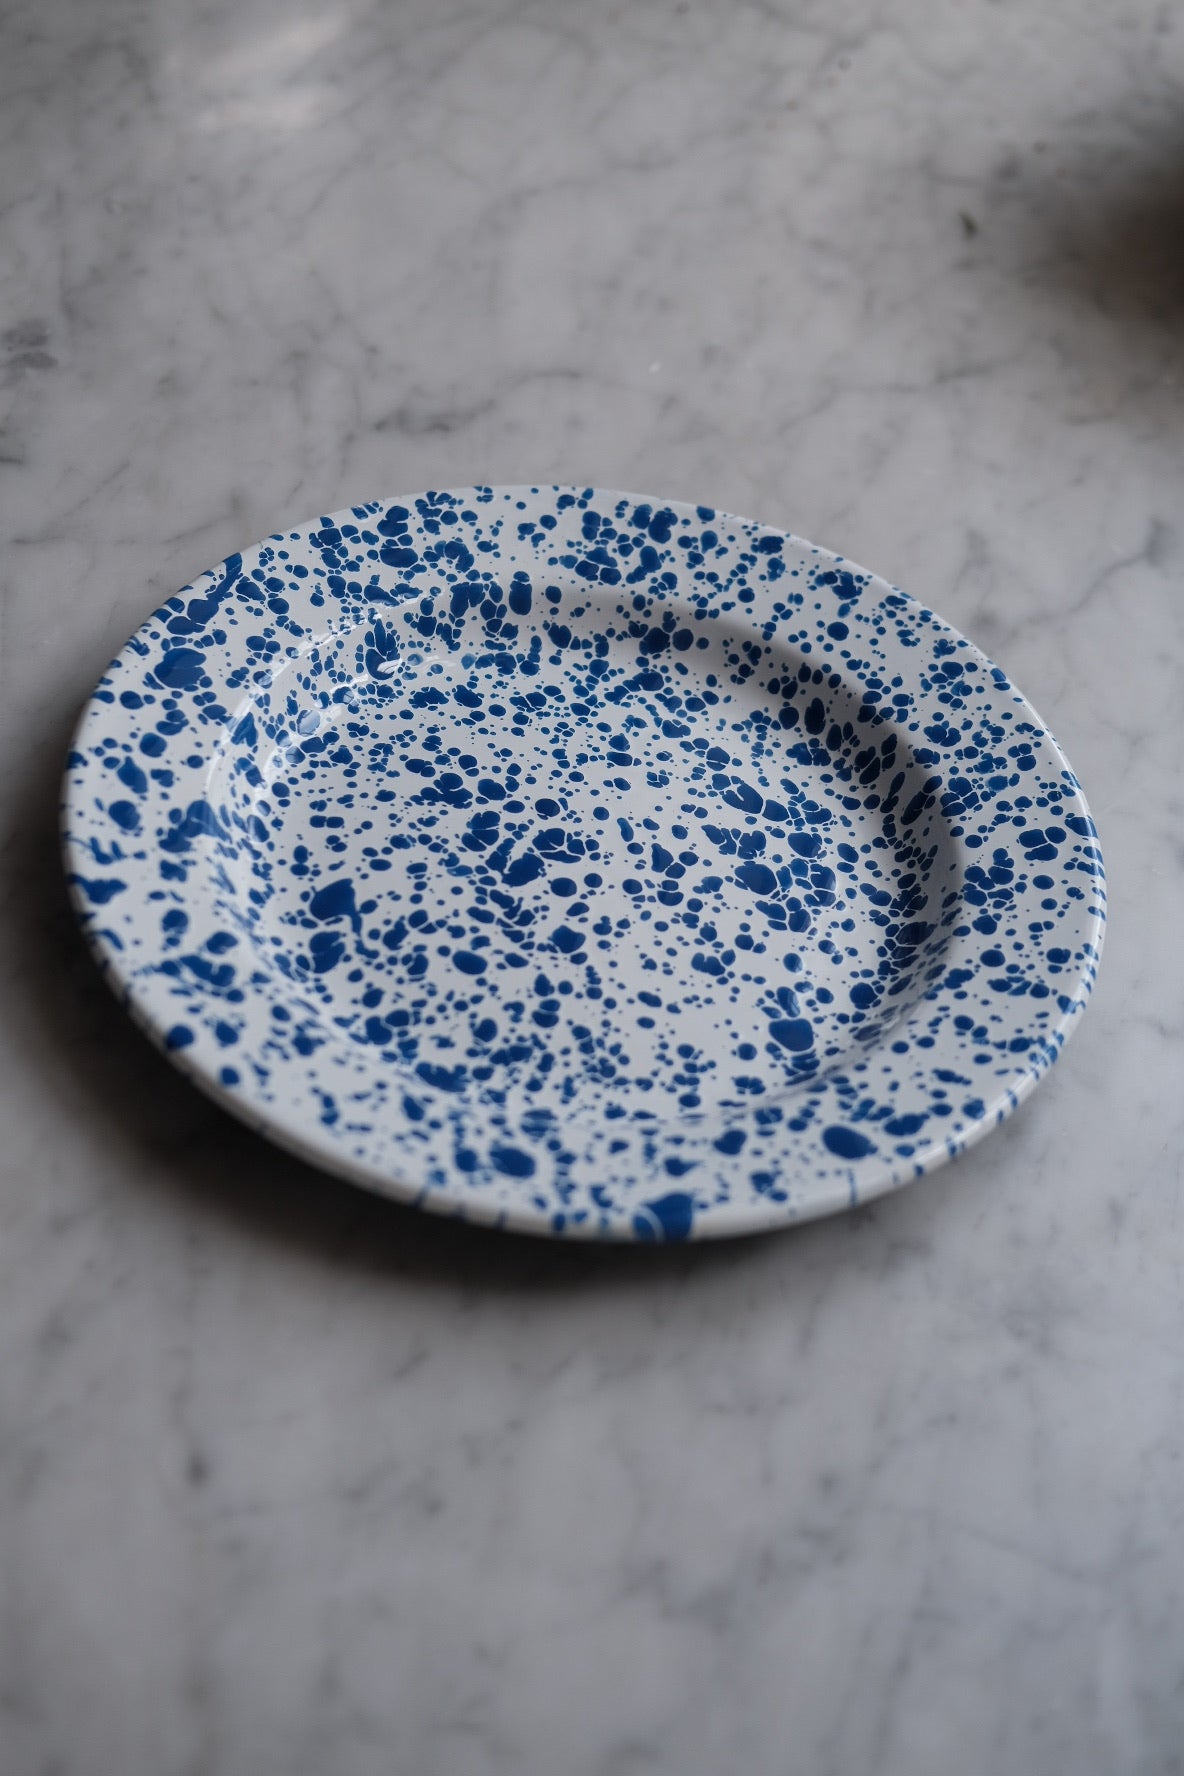 The plate • Enamel • Splatter blue